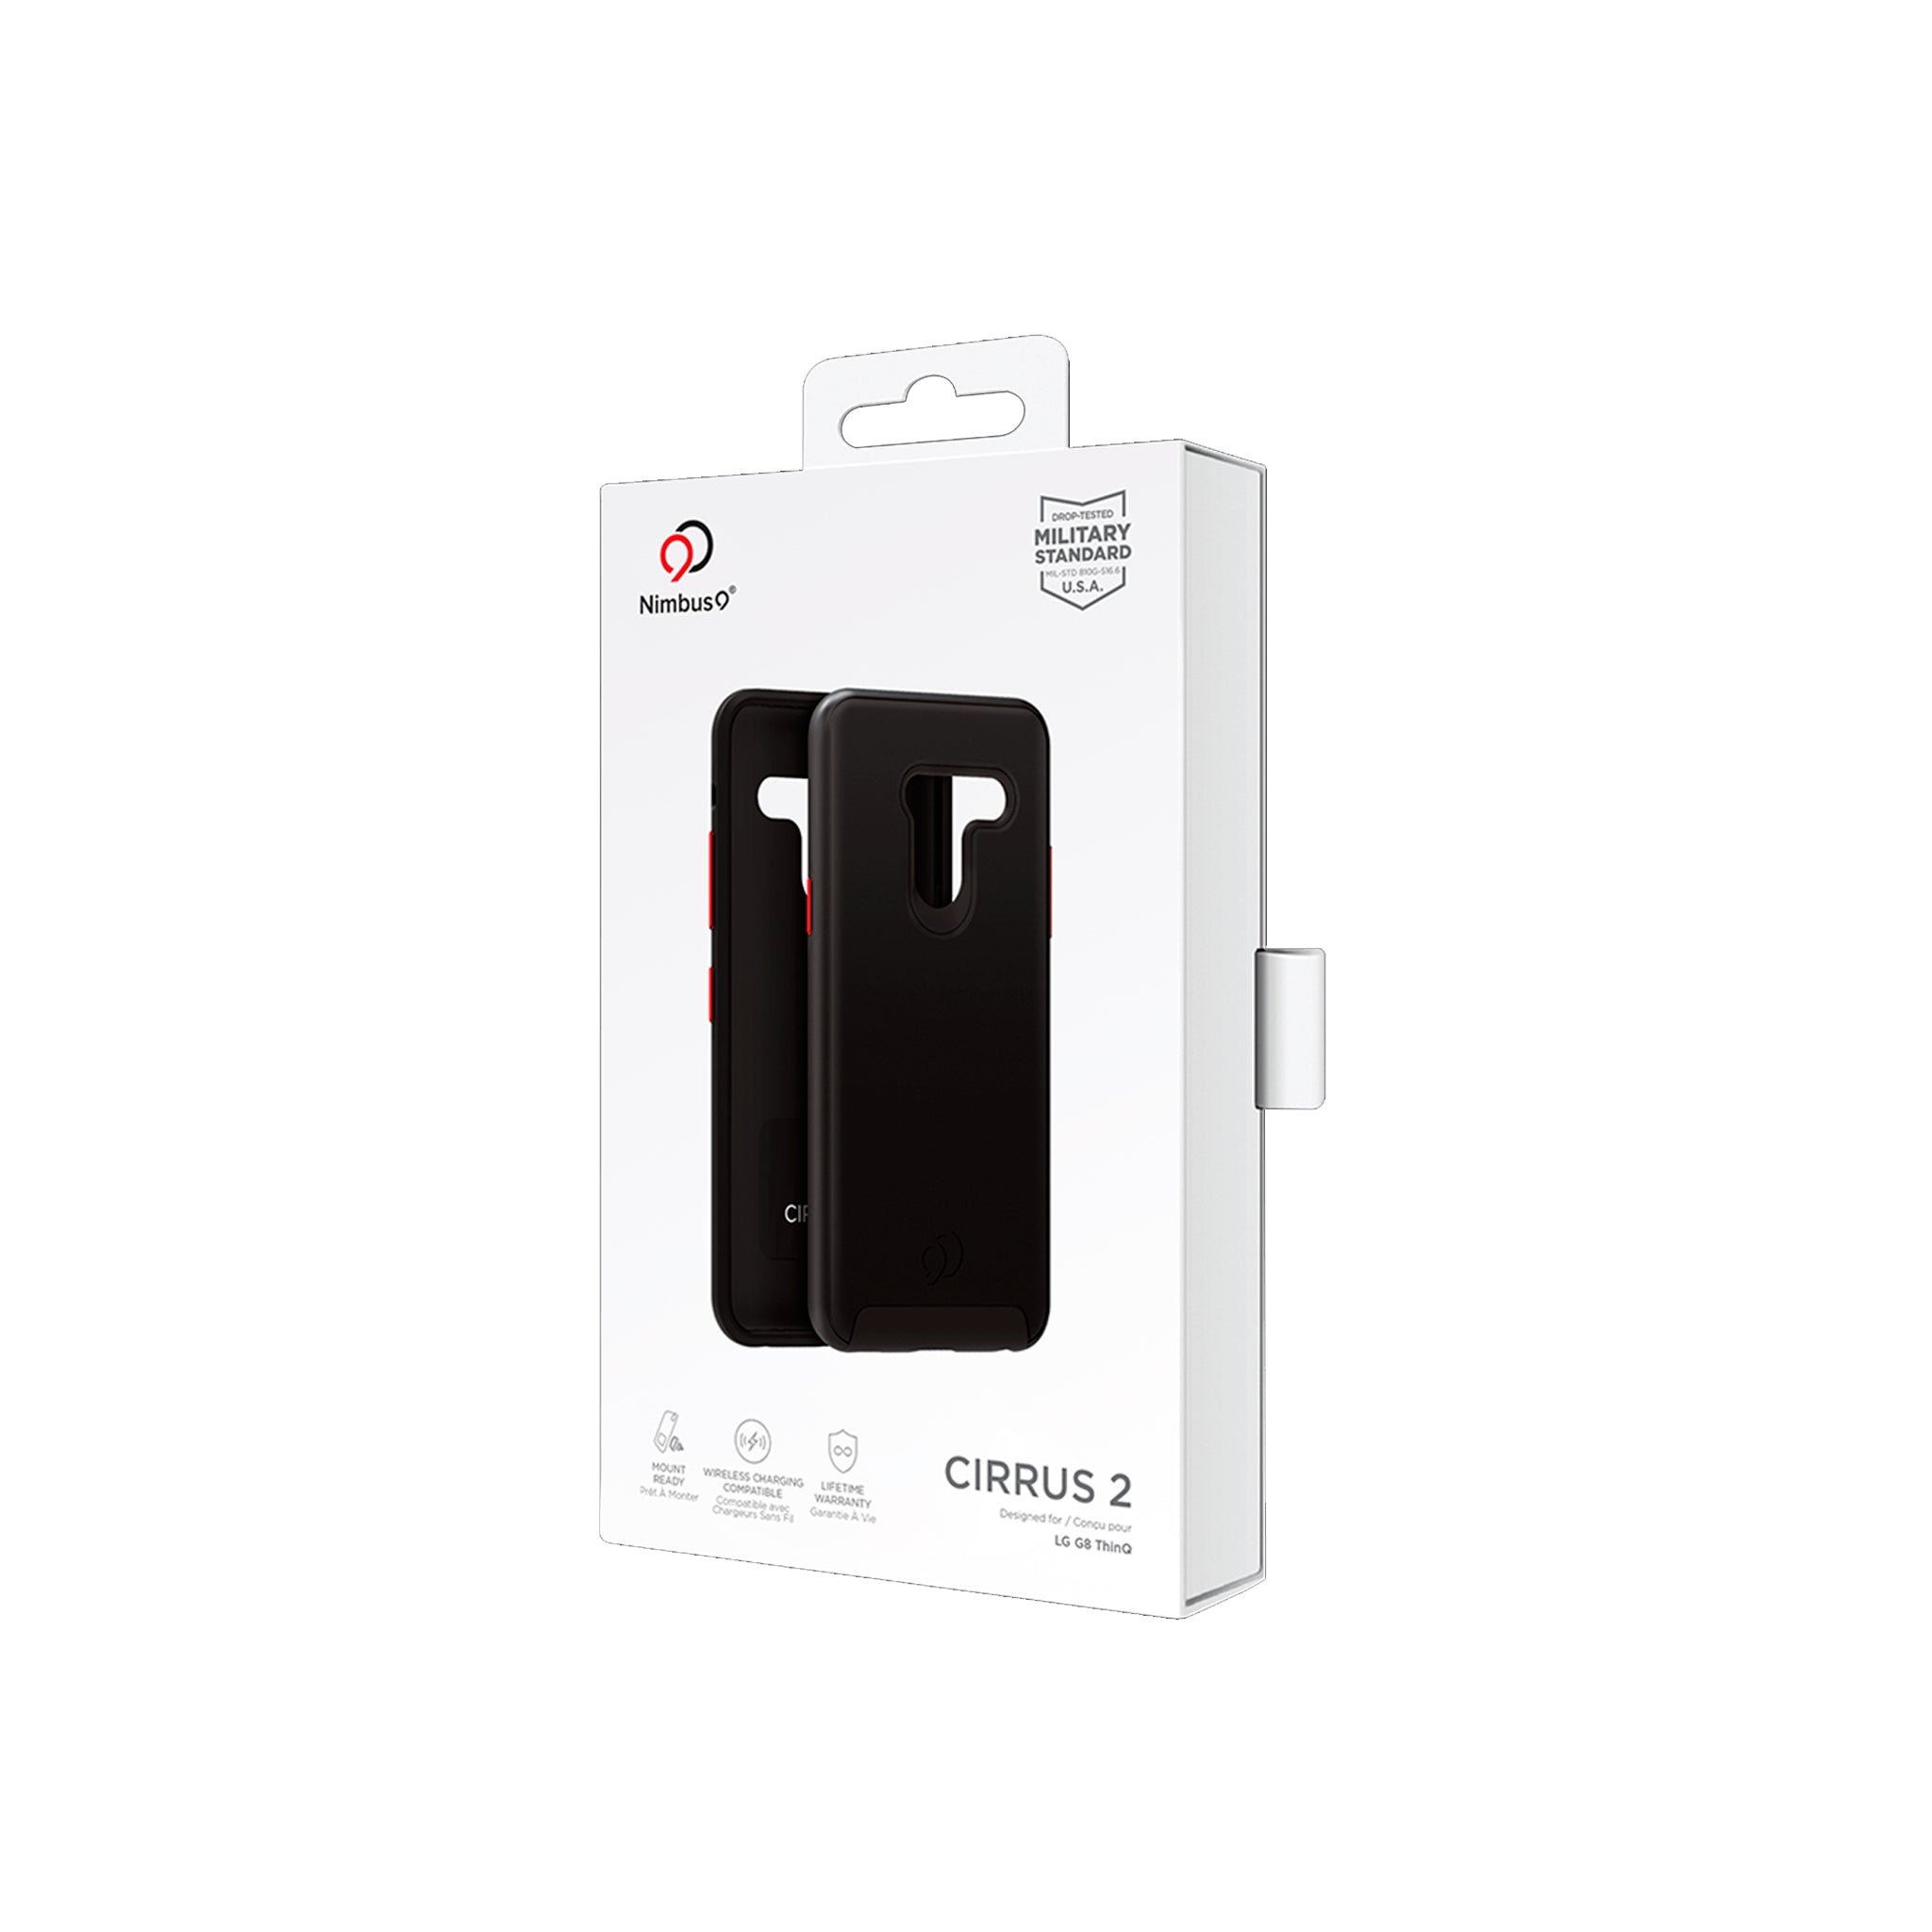 Nimbus9 - Cirrus 2 Case For Lg G8 Thinq - Black